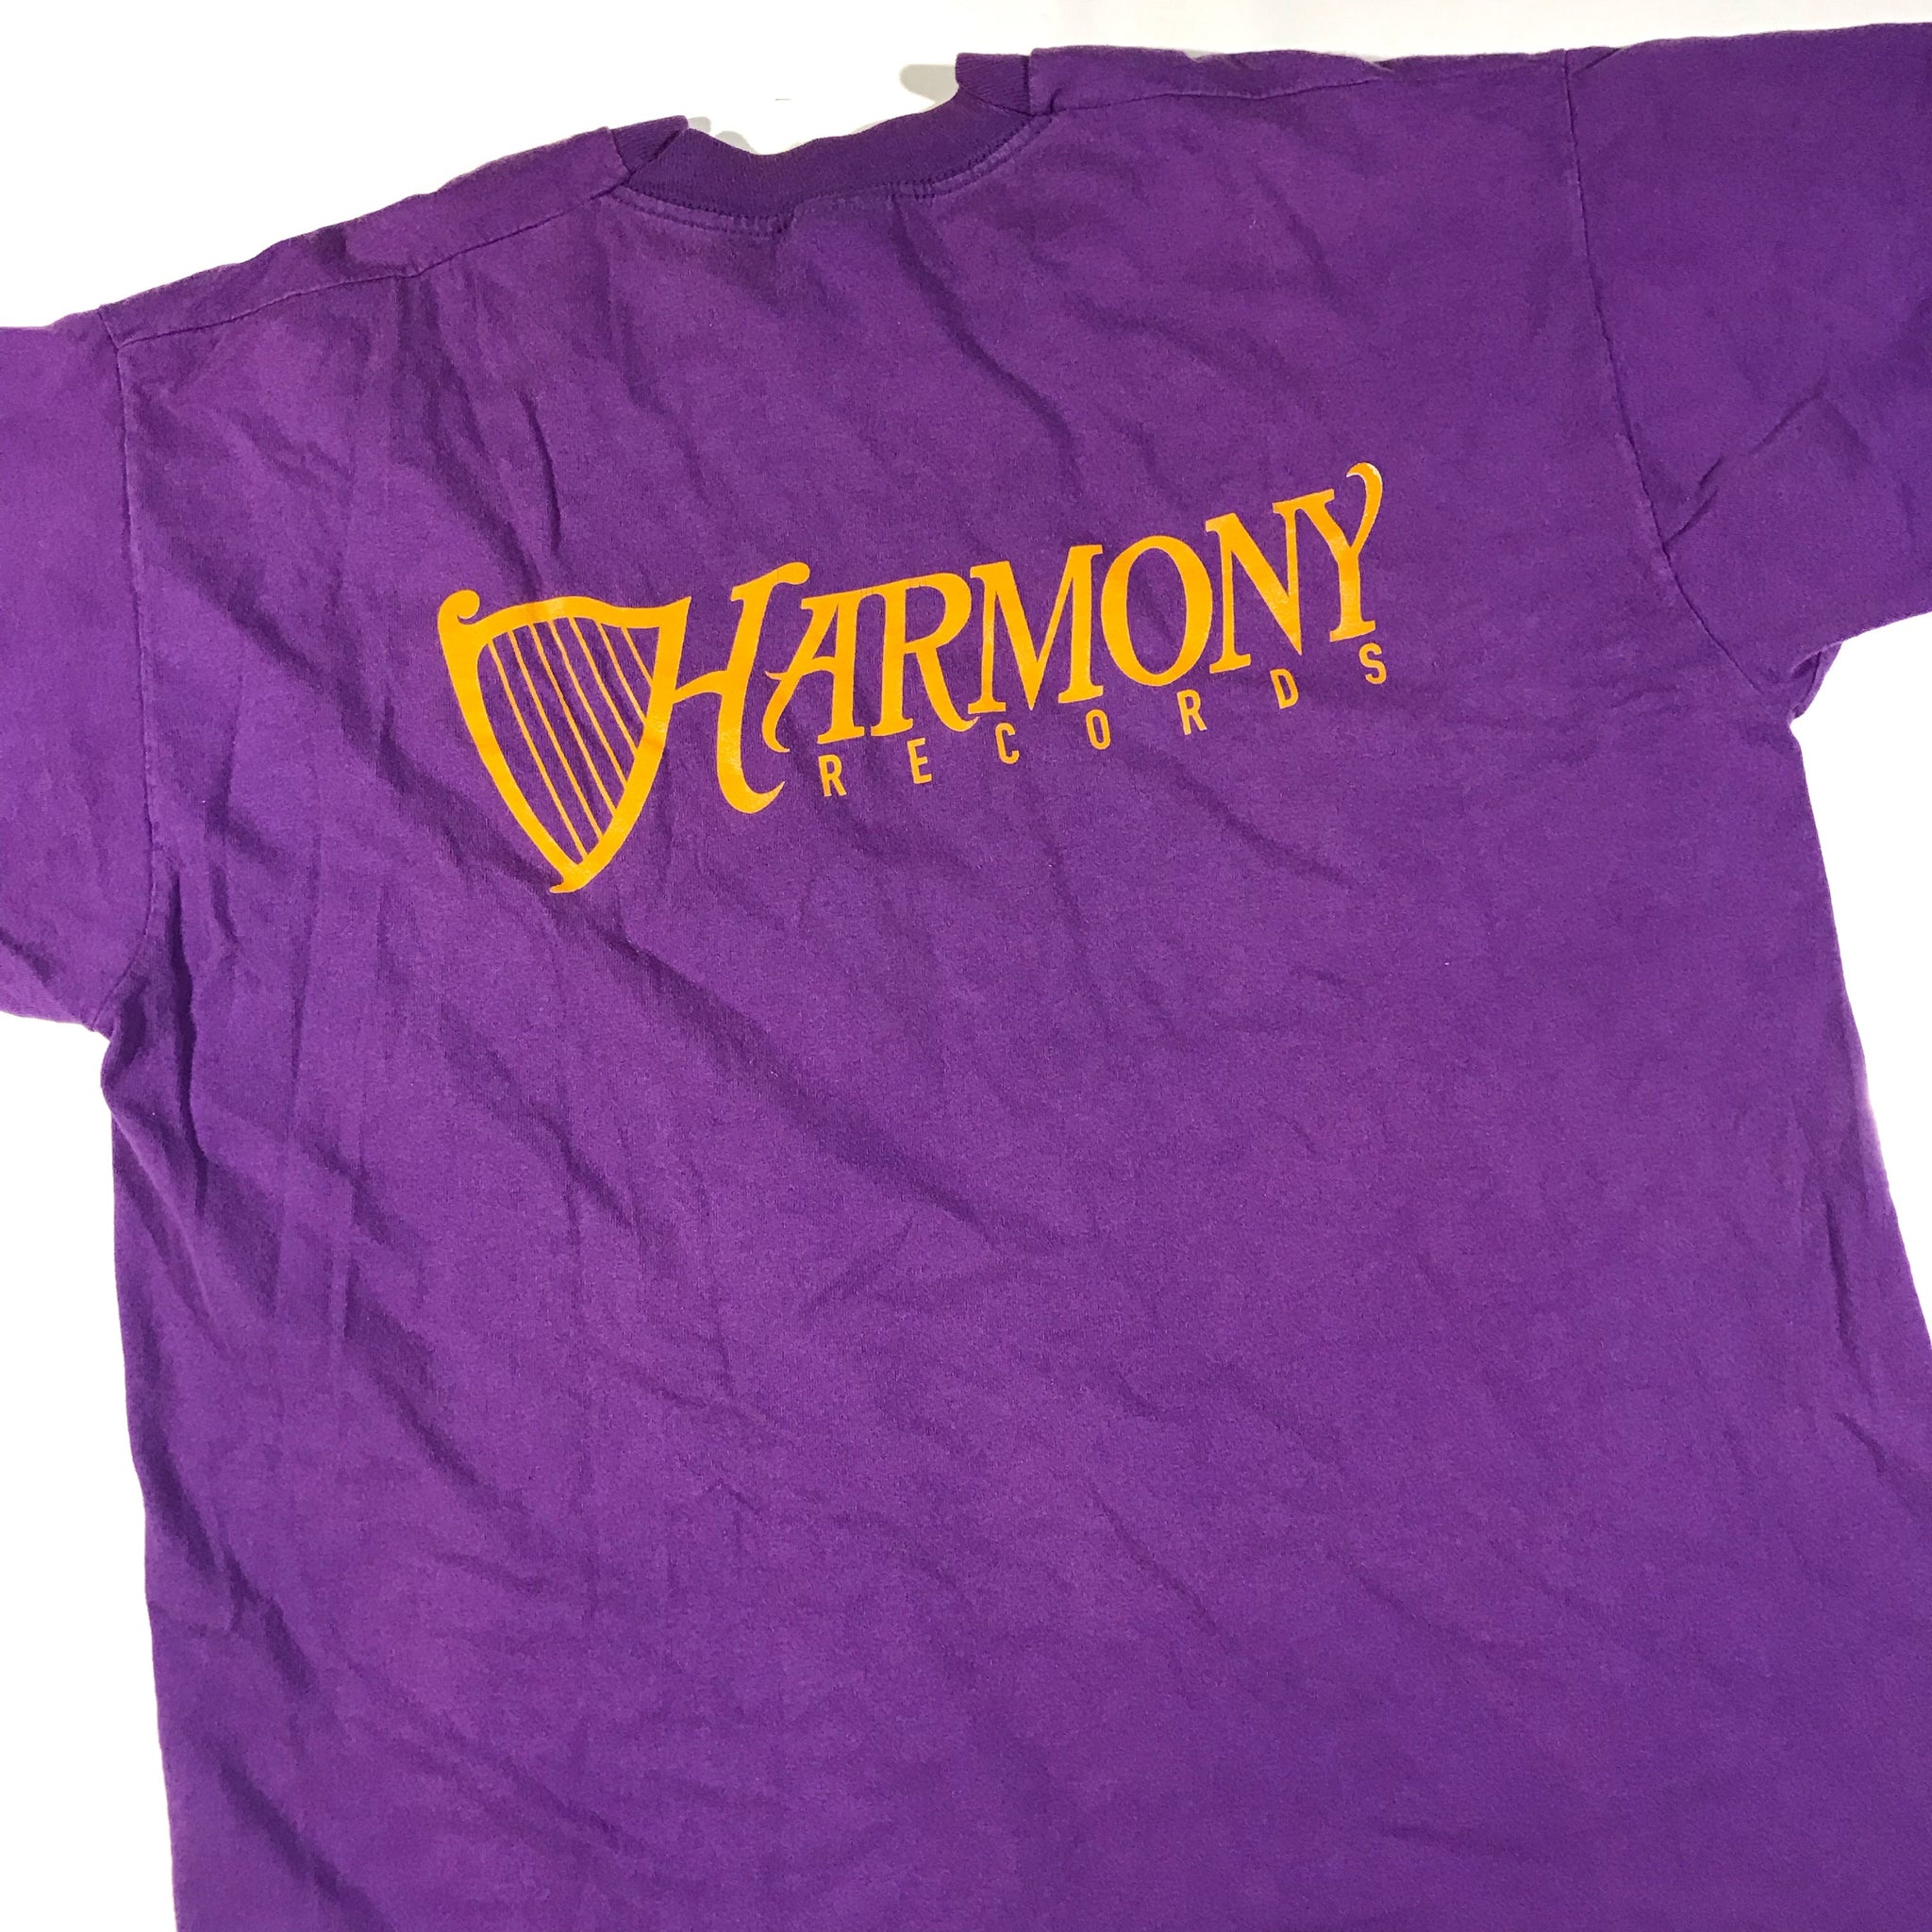 90s Harmony records tee. XL